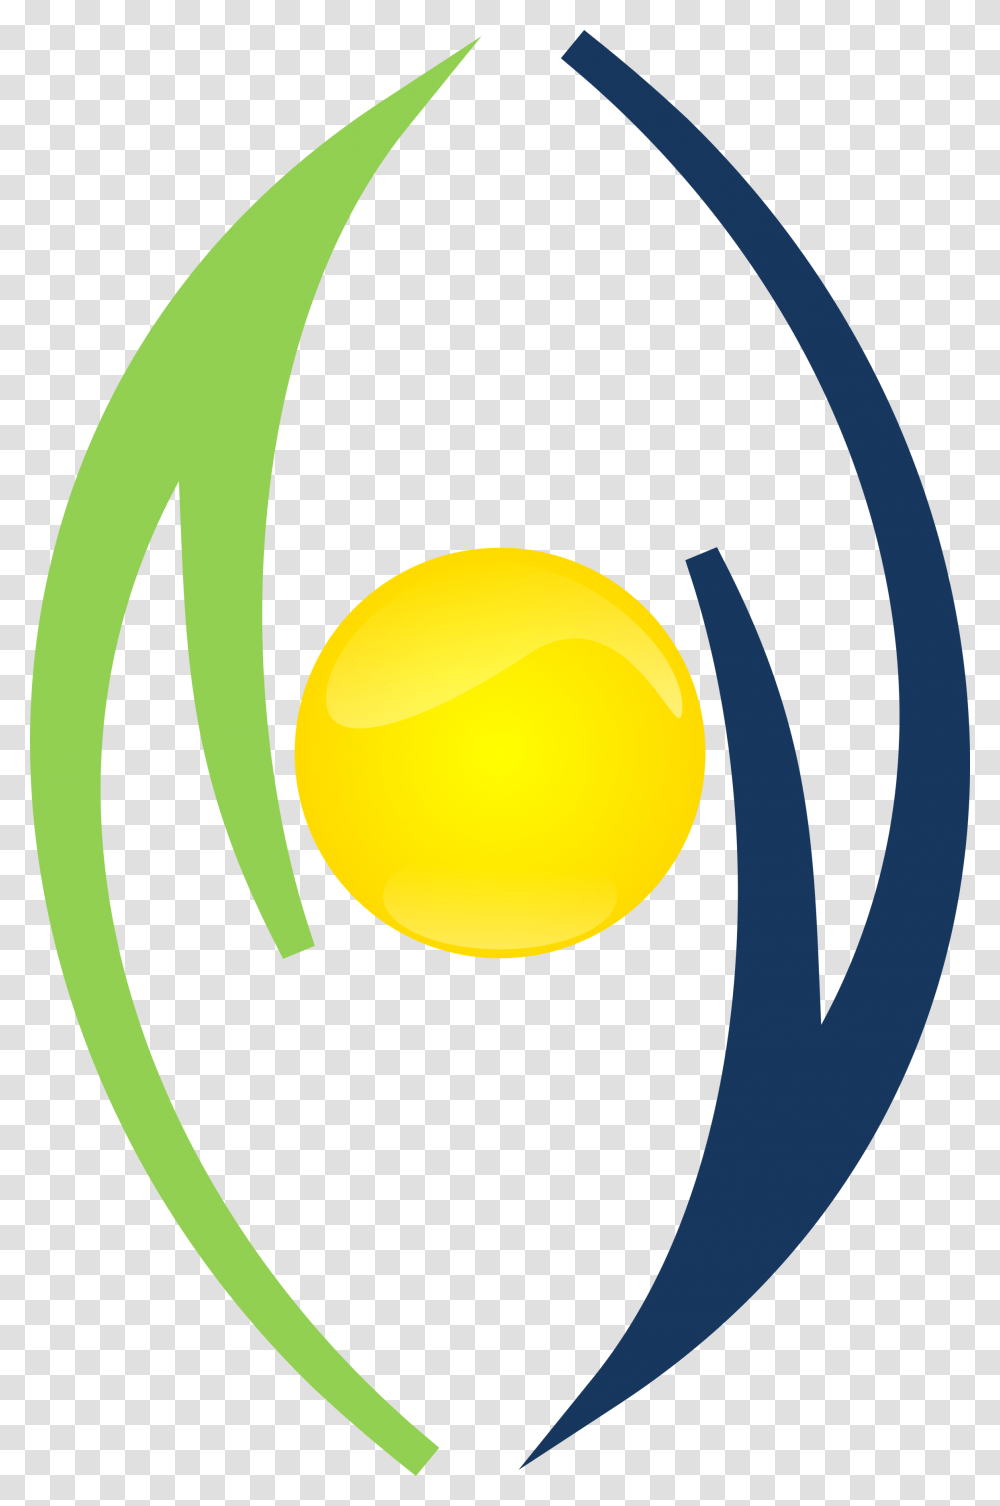 Simbolo Logo Sem Fundo Smbolos Para Logo Consultoria, Light, Traffic Light Transparent Png